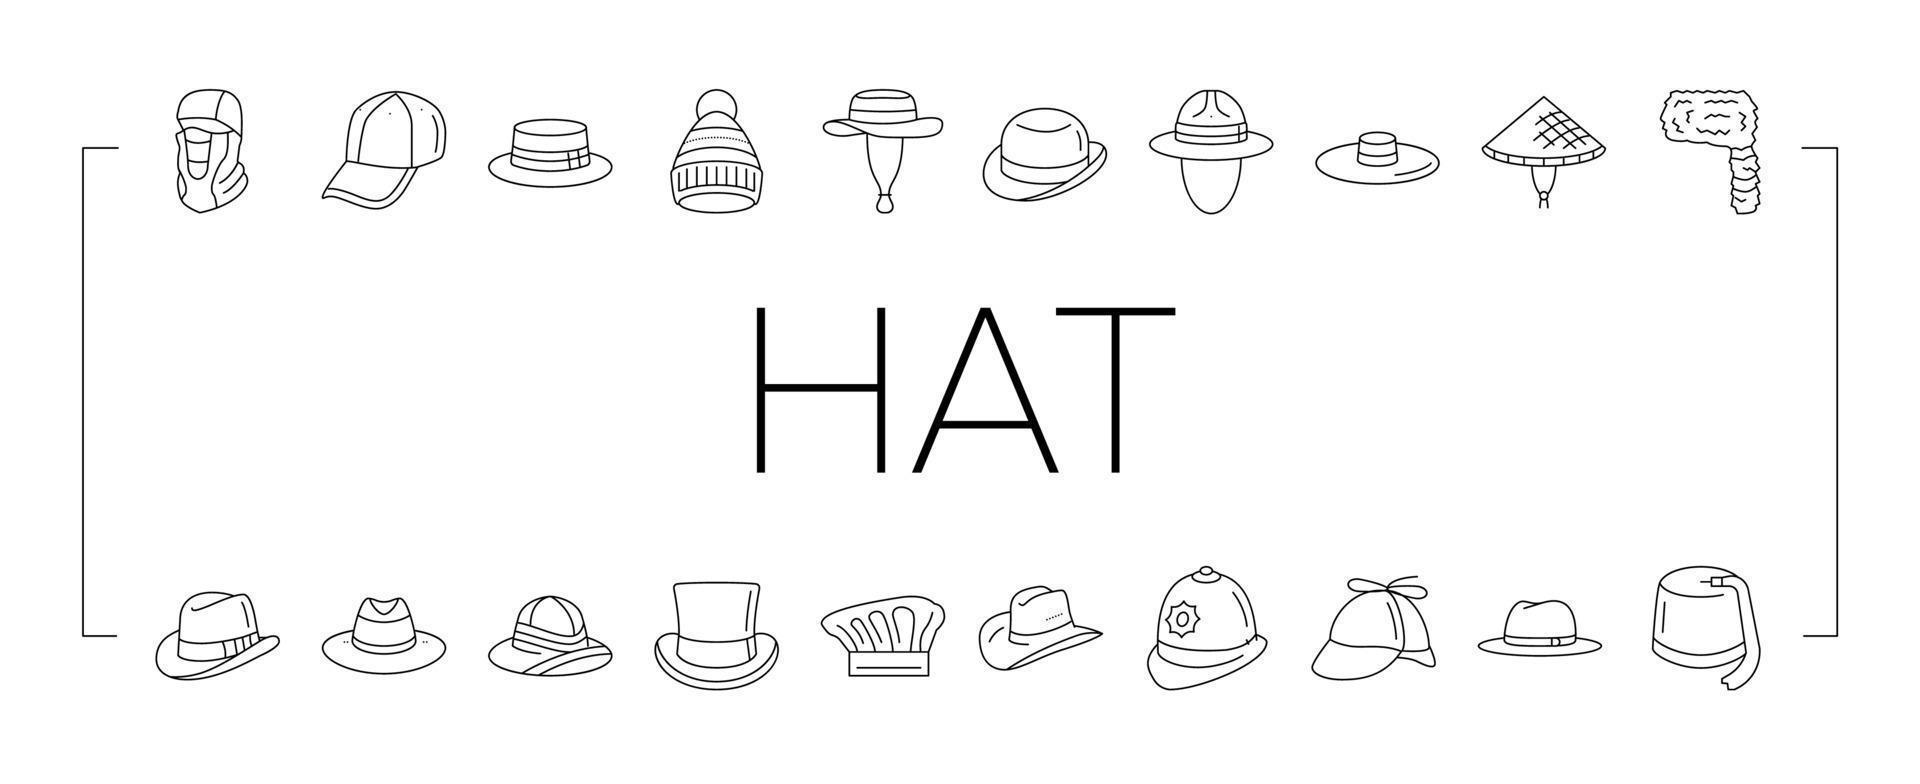 chapeau, casquette, tête, homme, sécurité, mode, icônes, ensemble, vecteur